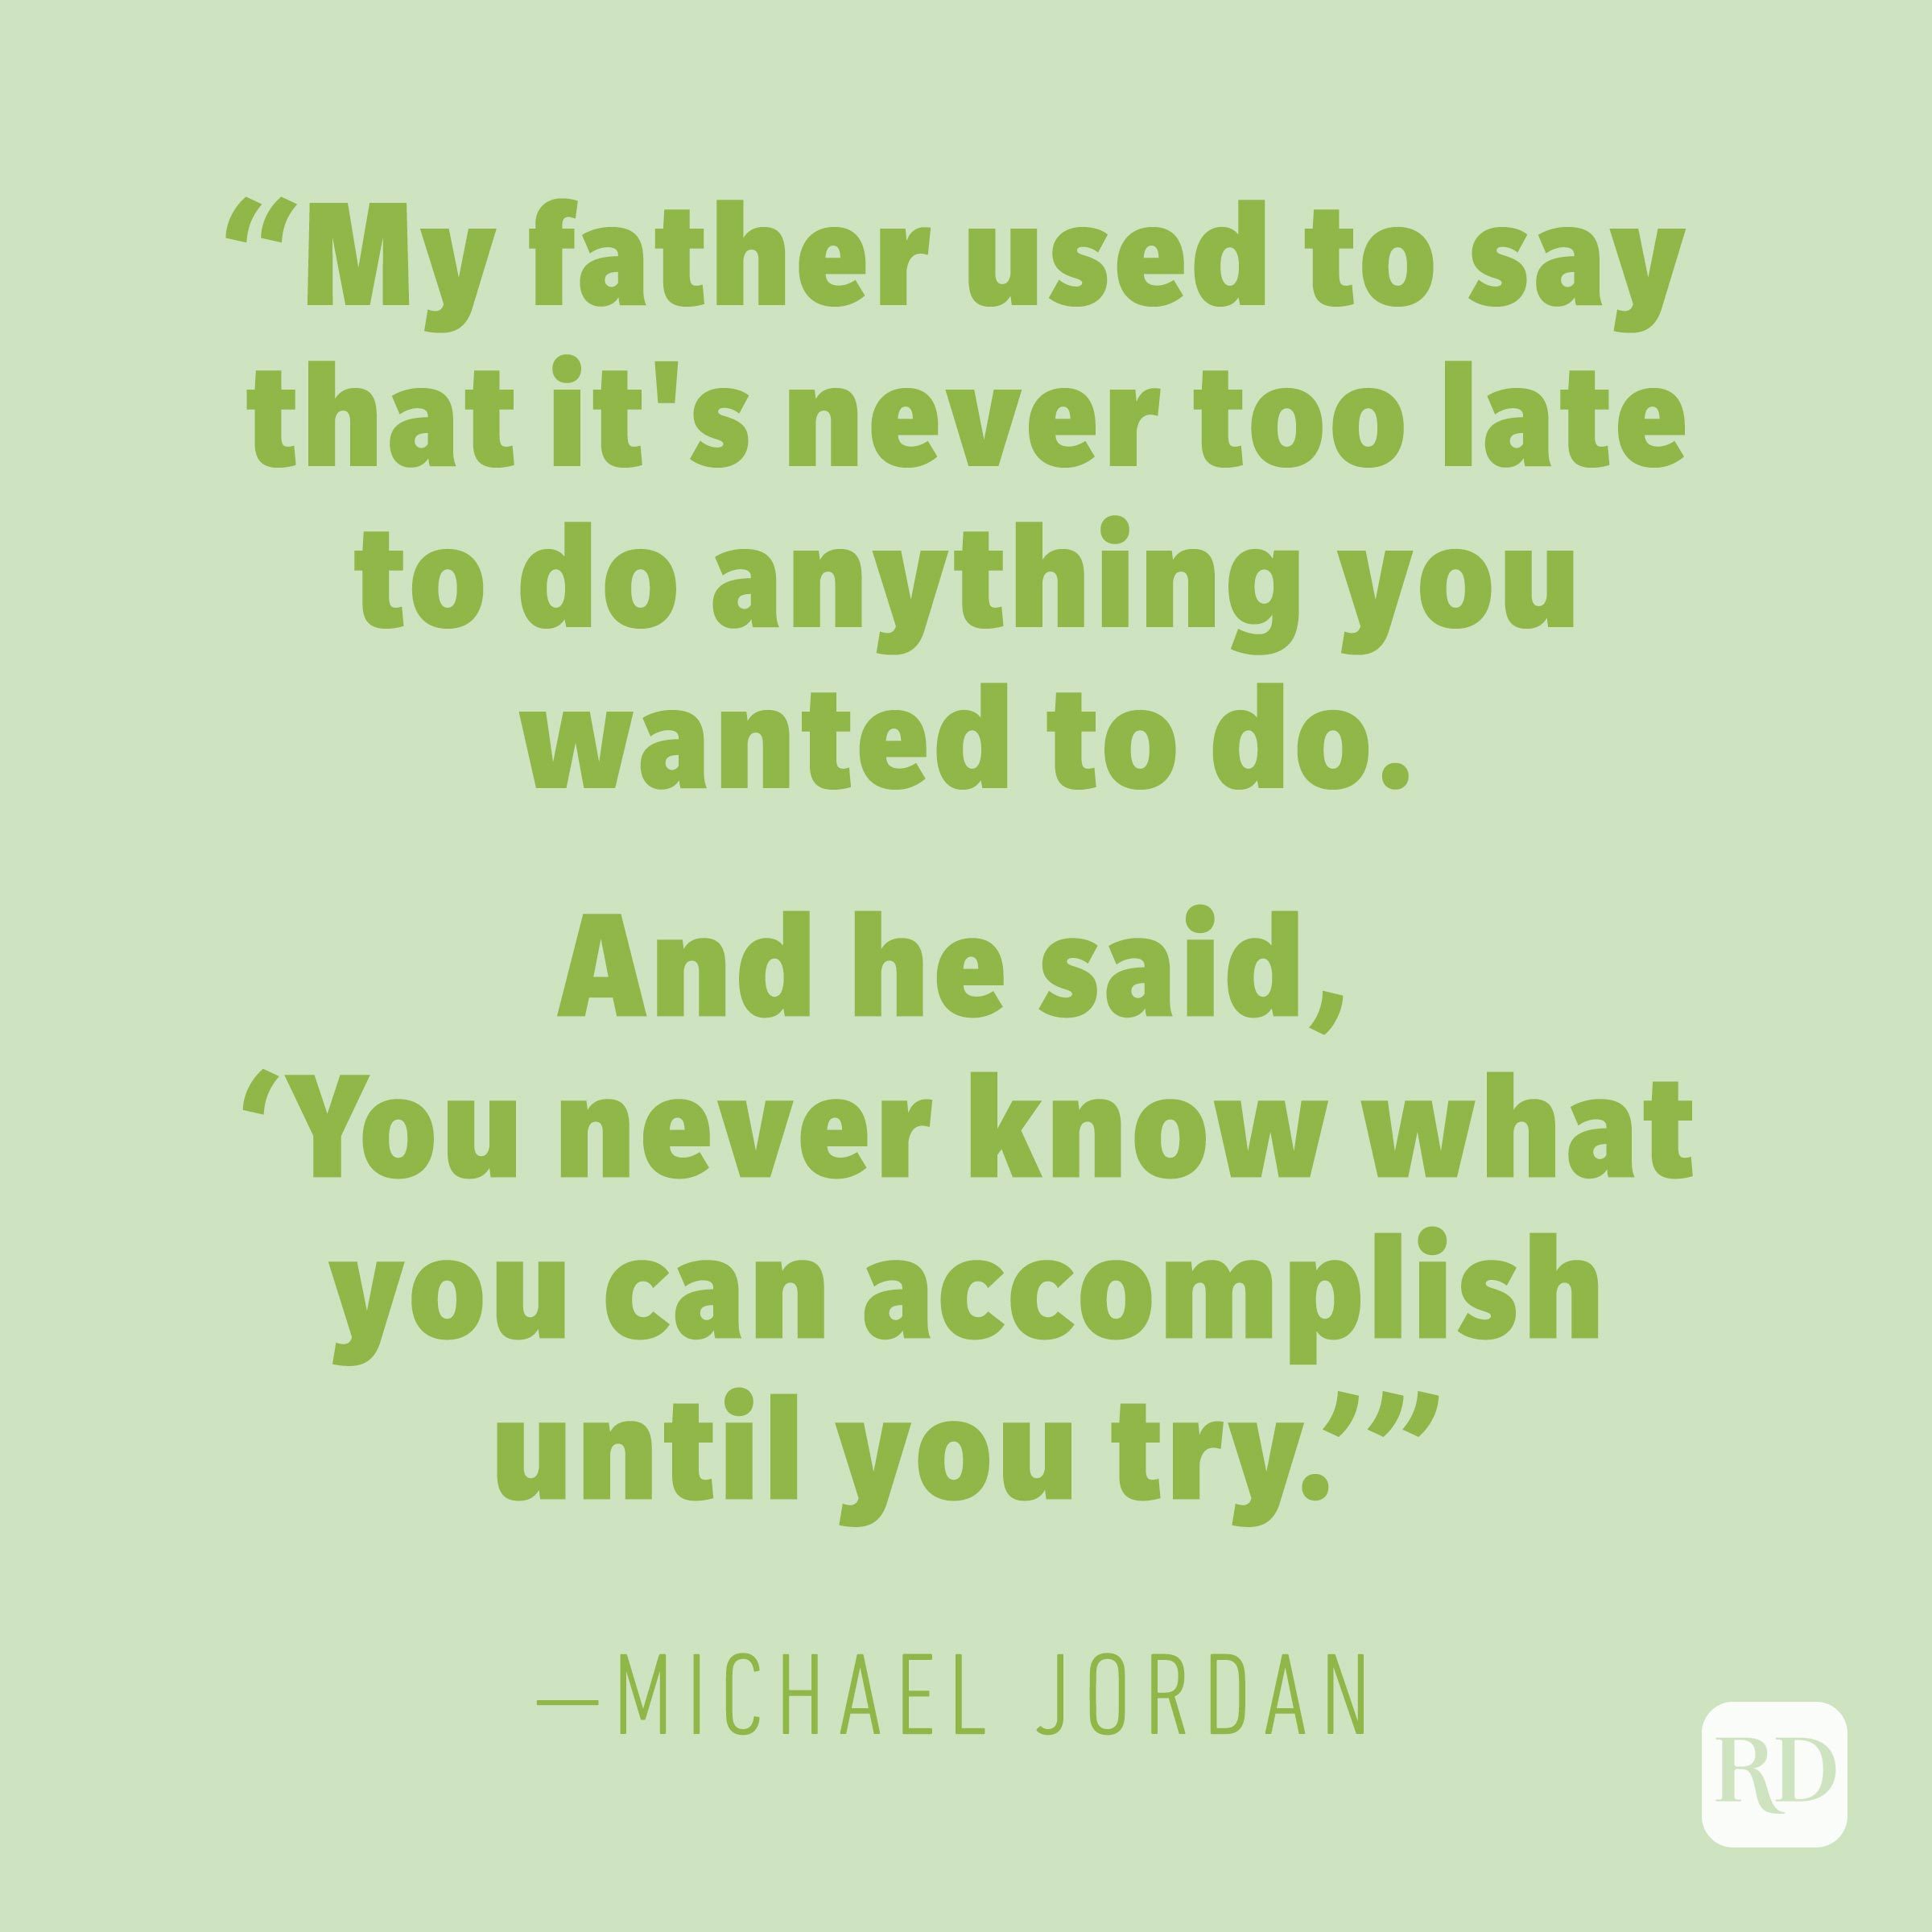 Michael Jordan quote